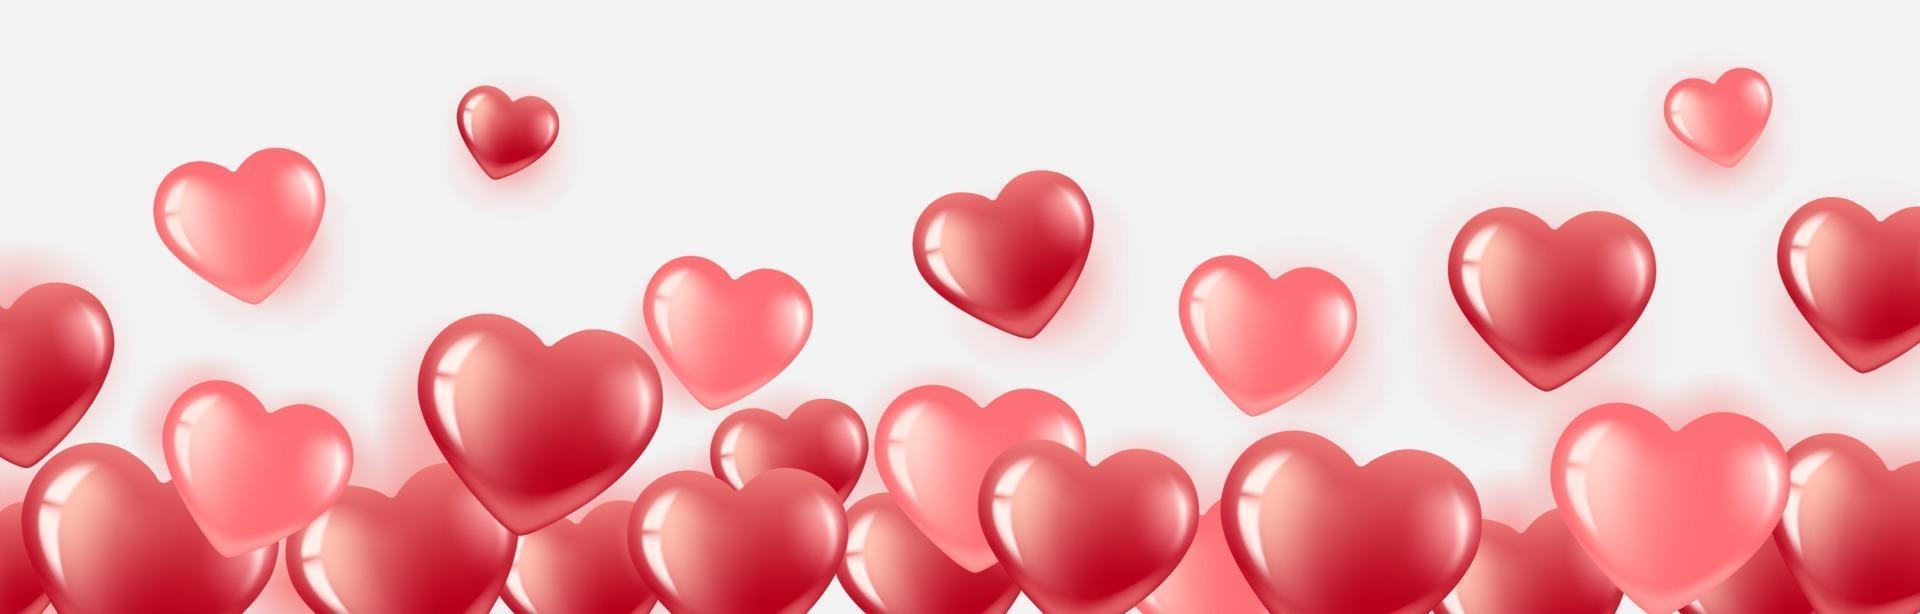 banner de corazón con globos rosados y rojos vector